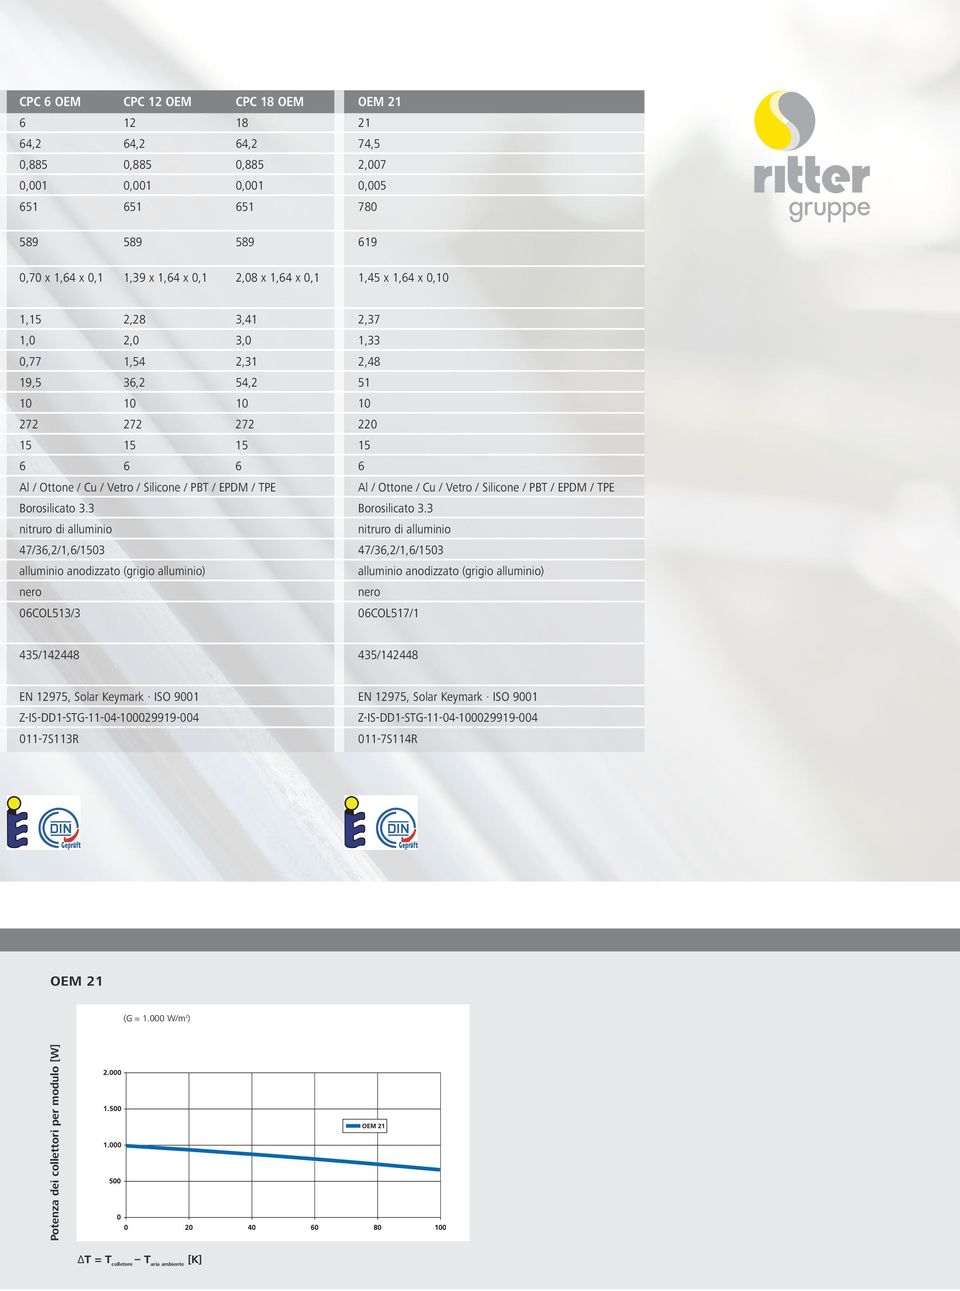 TPE Al / Ottone / Cu / Vetro / Silicone / PBT / EPDM / TPE Borosilicato 3.3 Borosilicato 3.